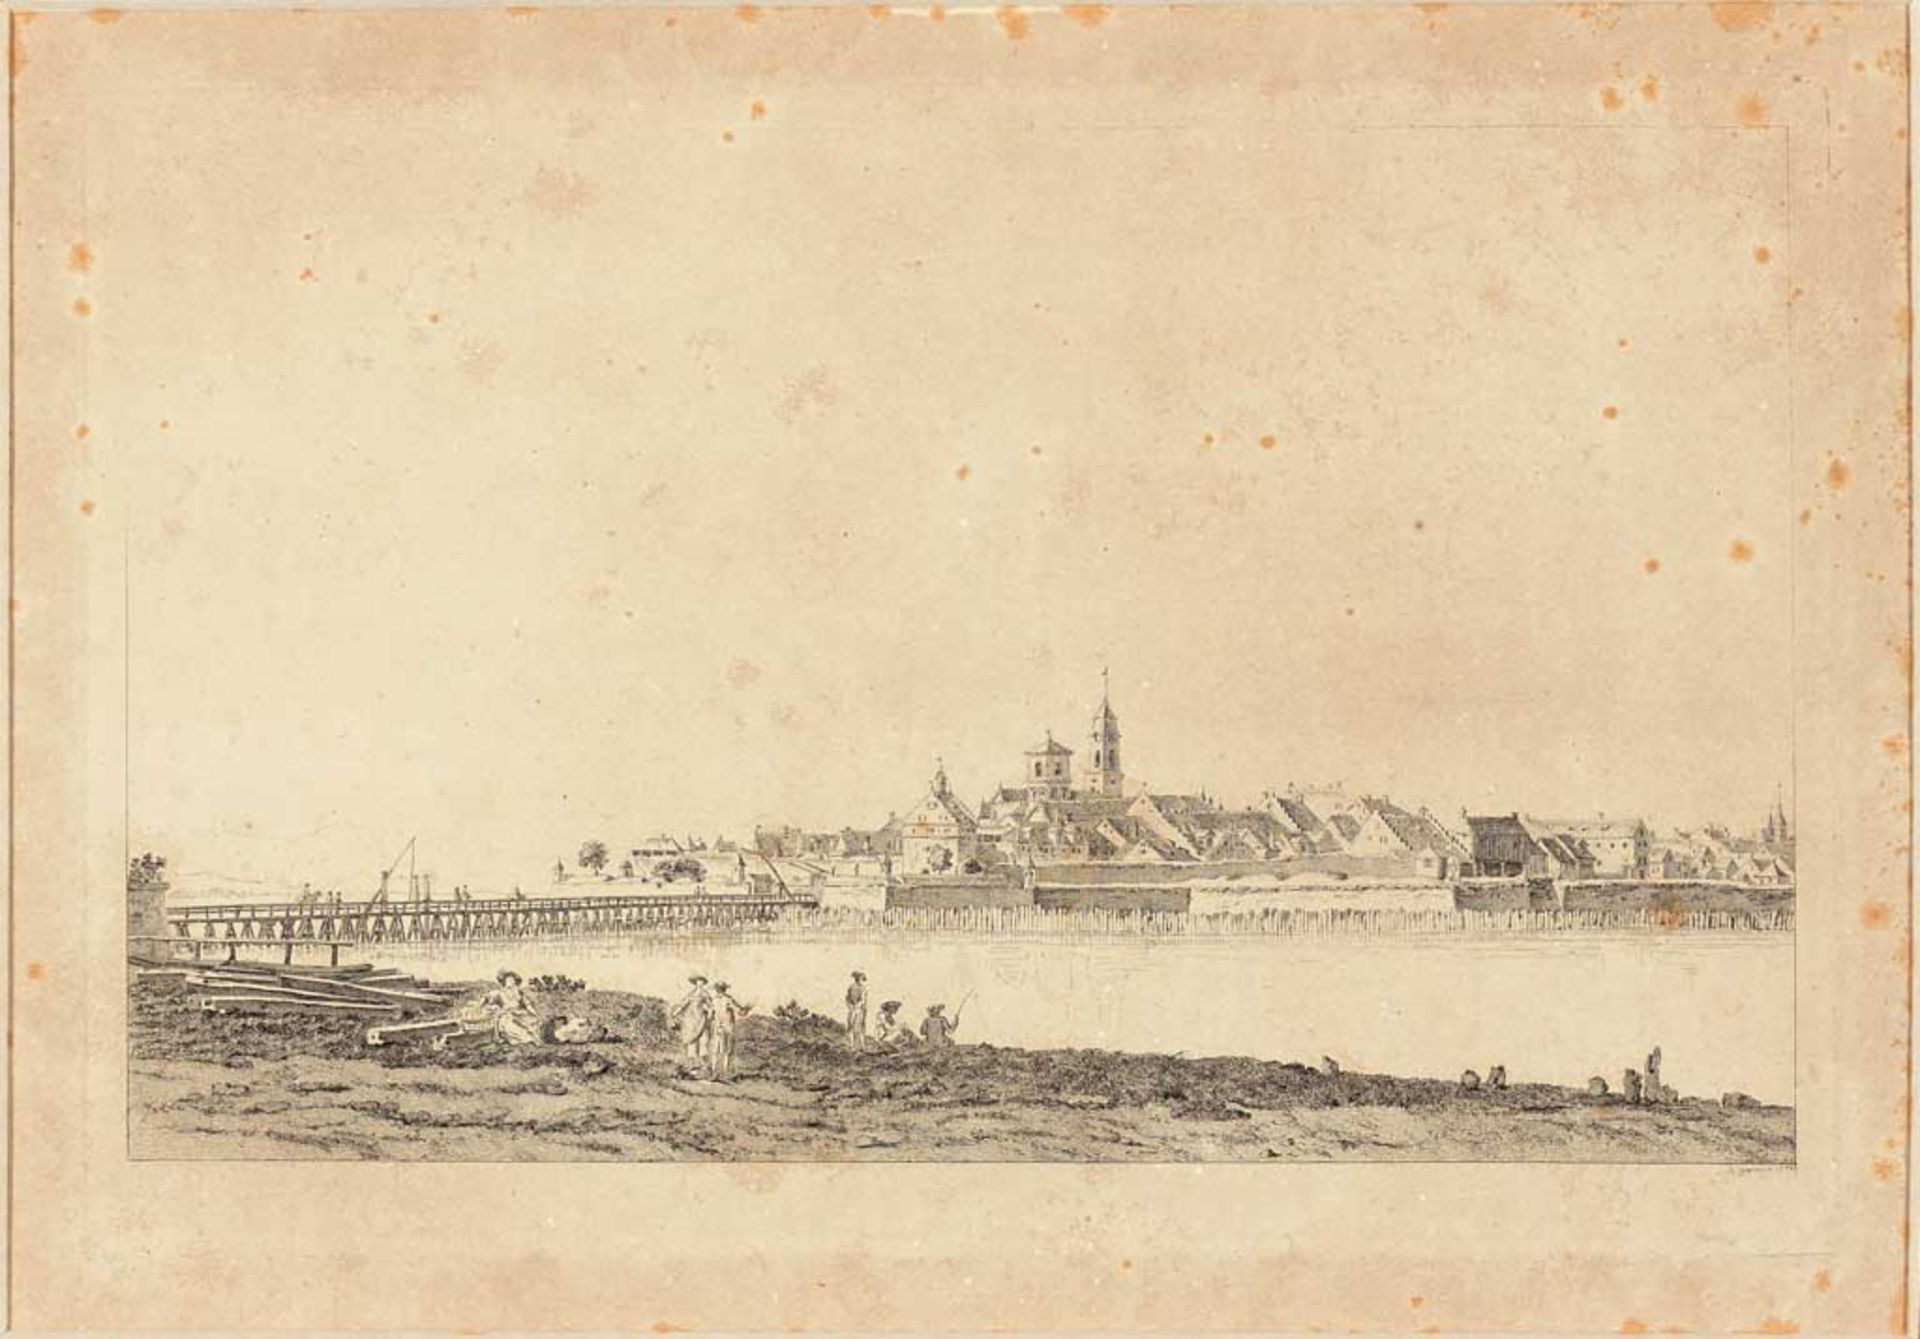 Lindau. Blick vom Aeschacher Ufer auf die Insel, im Vordergrund Figurenstaffage mit Angler.